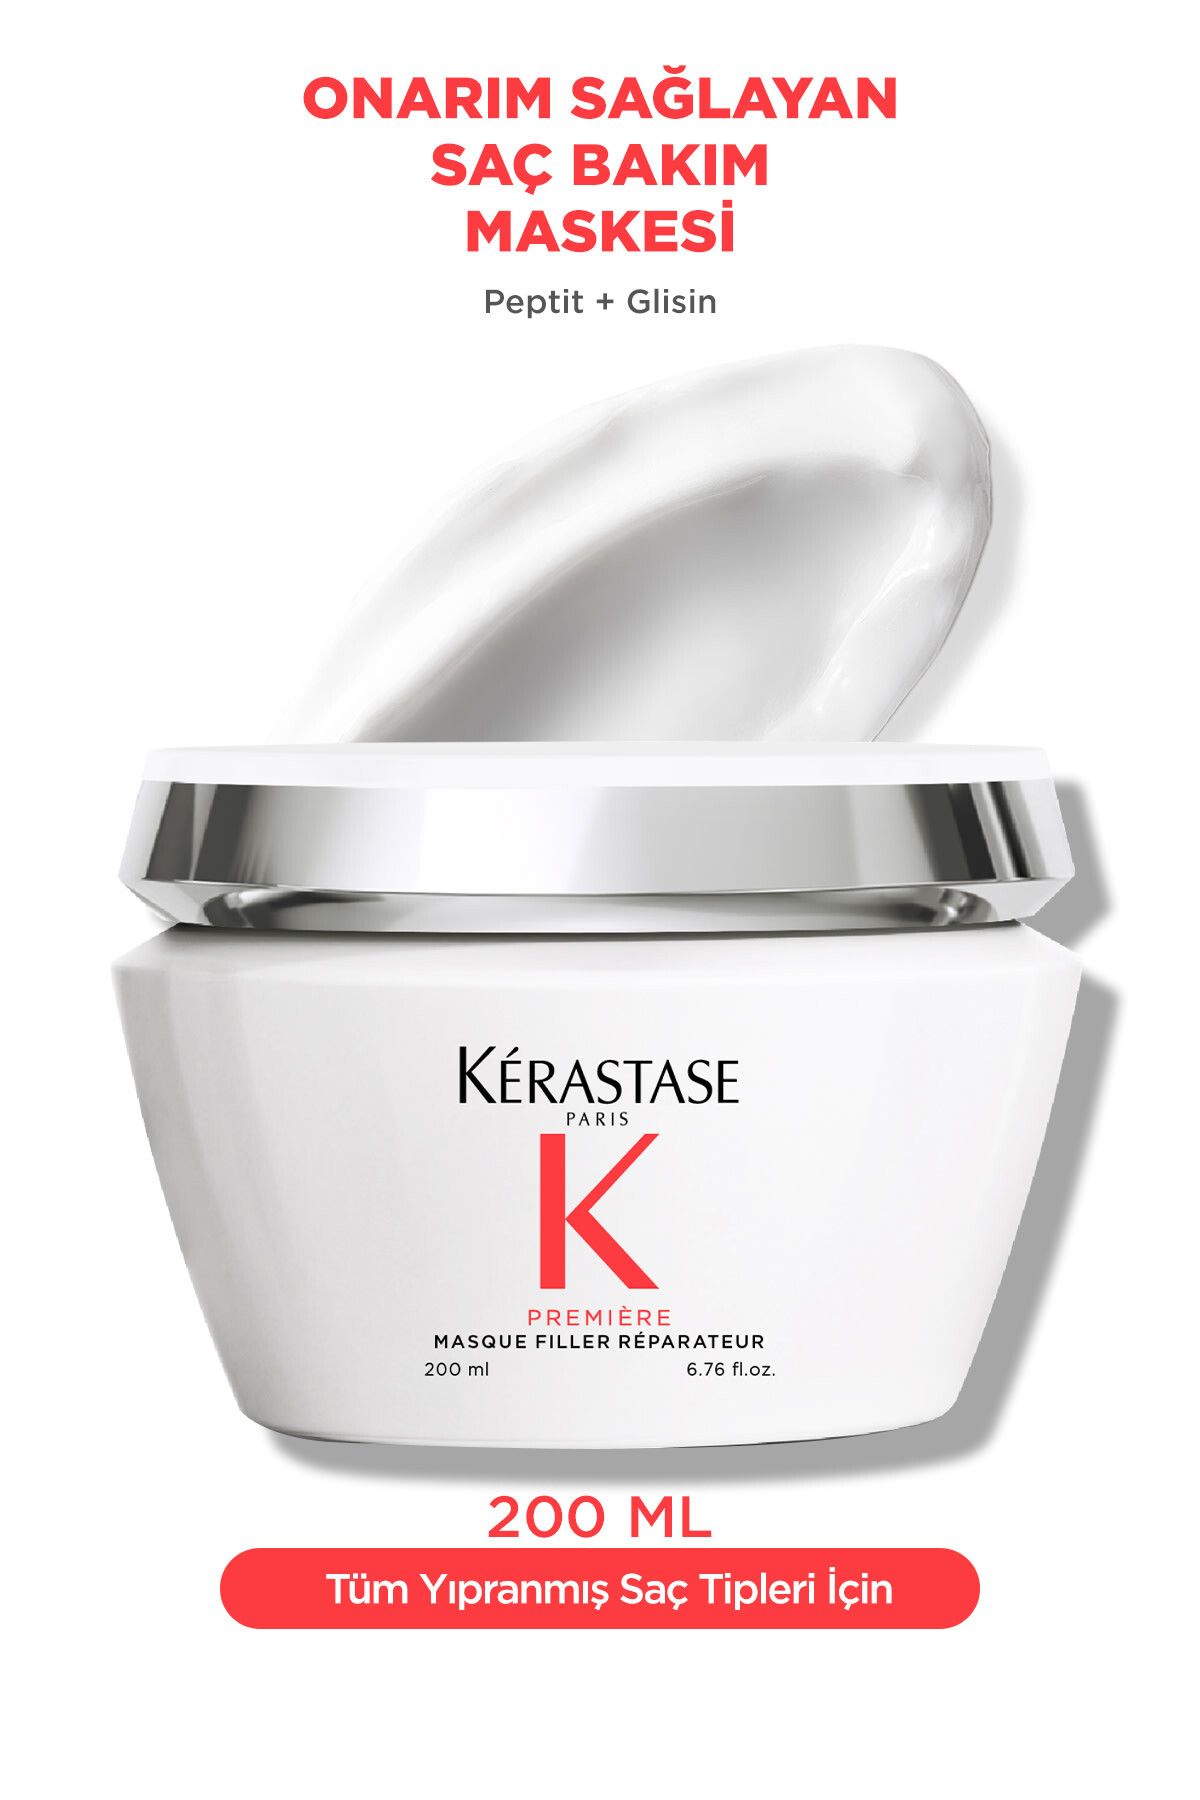 Kerastase Premiere Masque Filler Réparateur Kırılma Karşıtı Onarım Sağlayan Saç Bakım Maskesi 200 ml